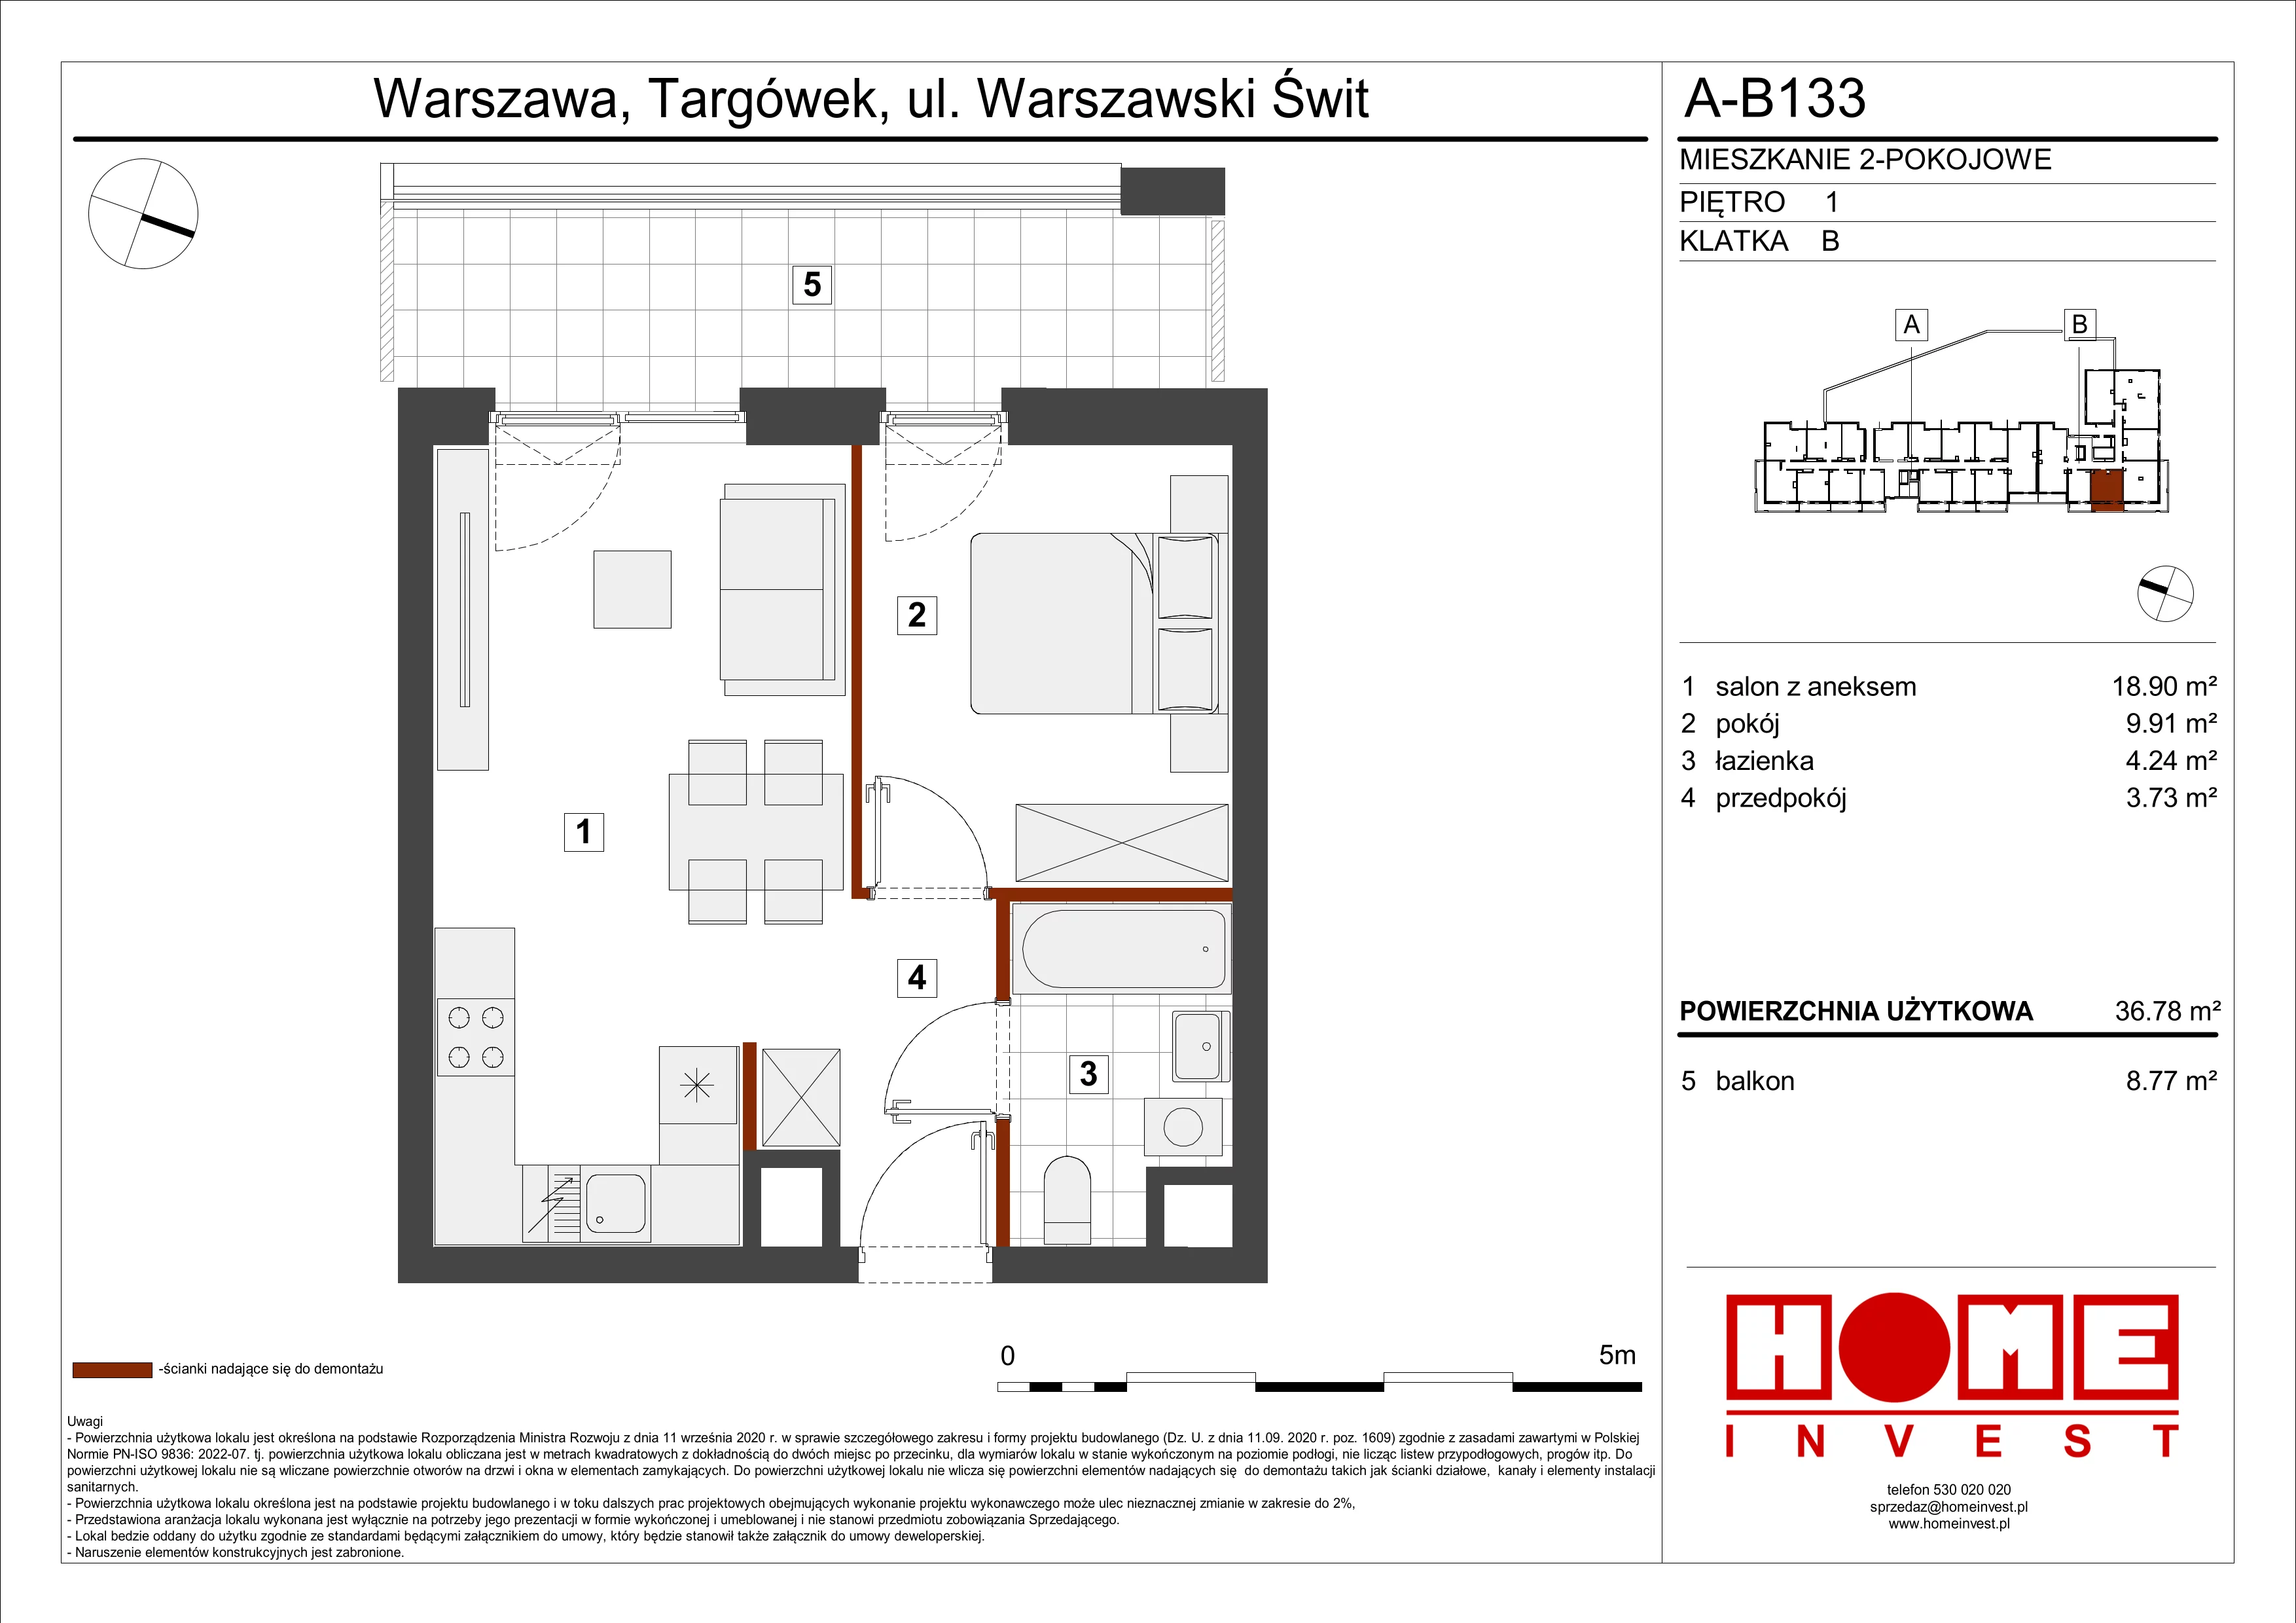 Mieszkanie 36,78 m², piętro 1, oferta nr A-B133, Warszawski Świt, Warszawa, Targówek, Bródno, ul. Warszawski Świt 5